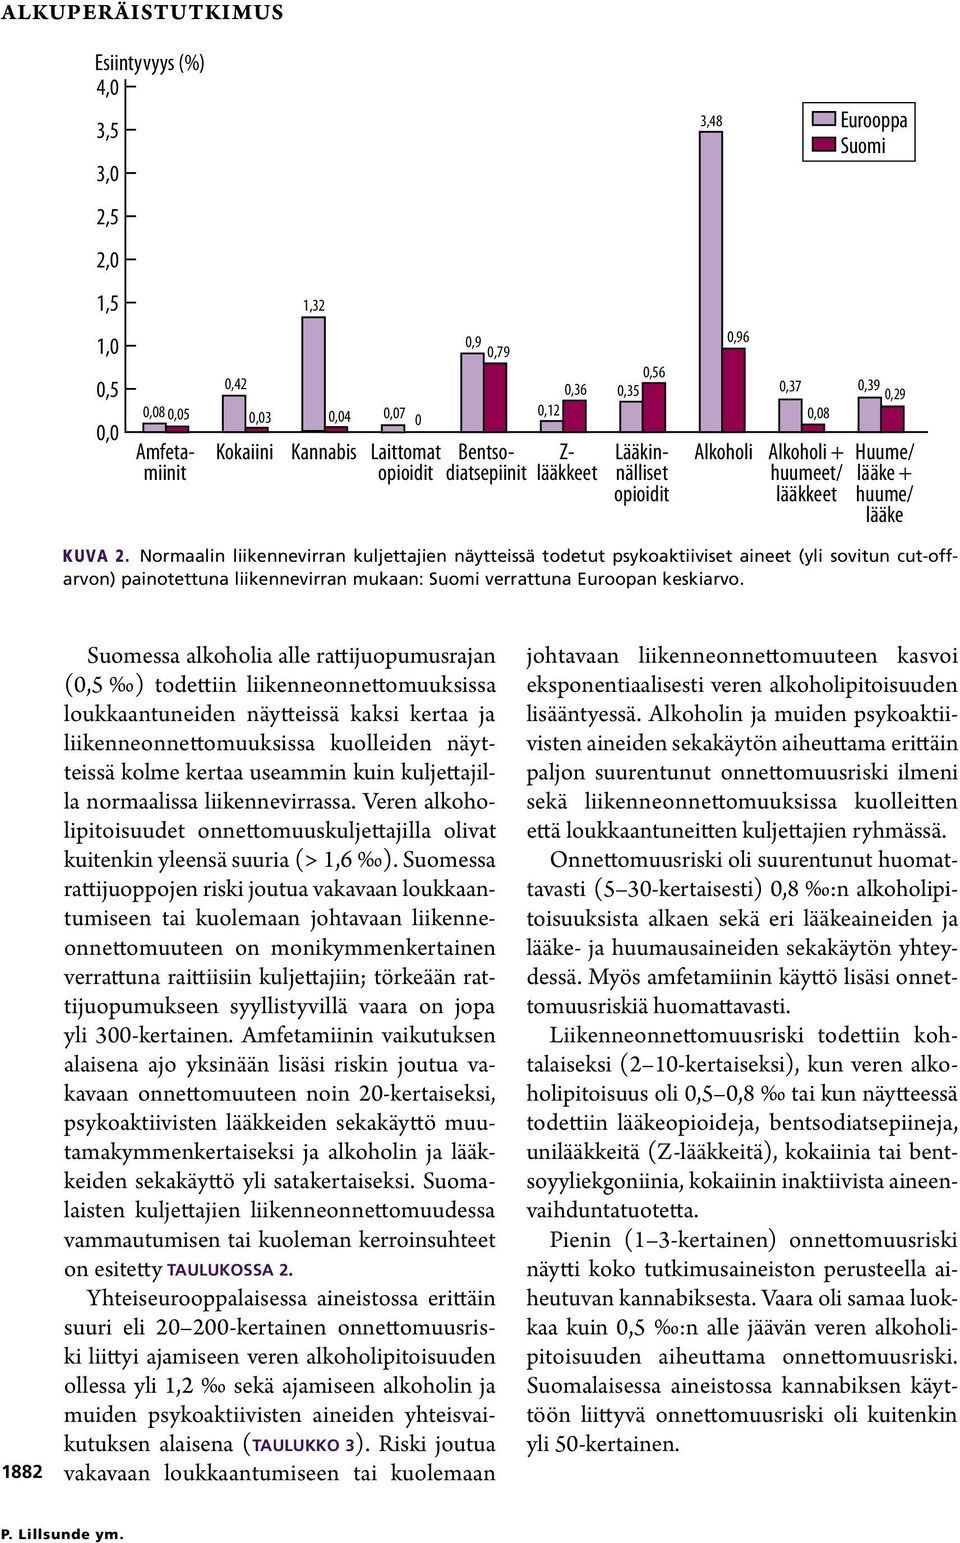 Normaalin liikennevirran kuljettajien näytteissä todetut psykoaktiiviset aineet (yli sovitun cut-offarvon) painotettuna liikennevirran mukaan: Suomi verrattuna Euroopan keskiarvo.